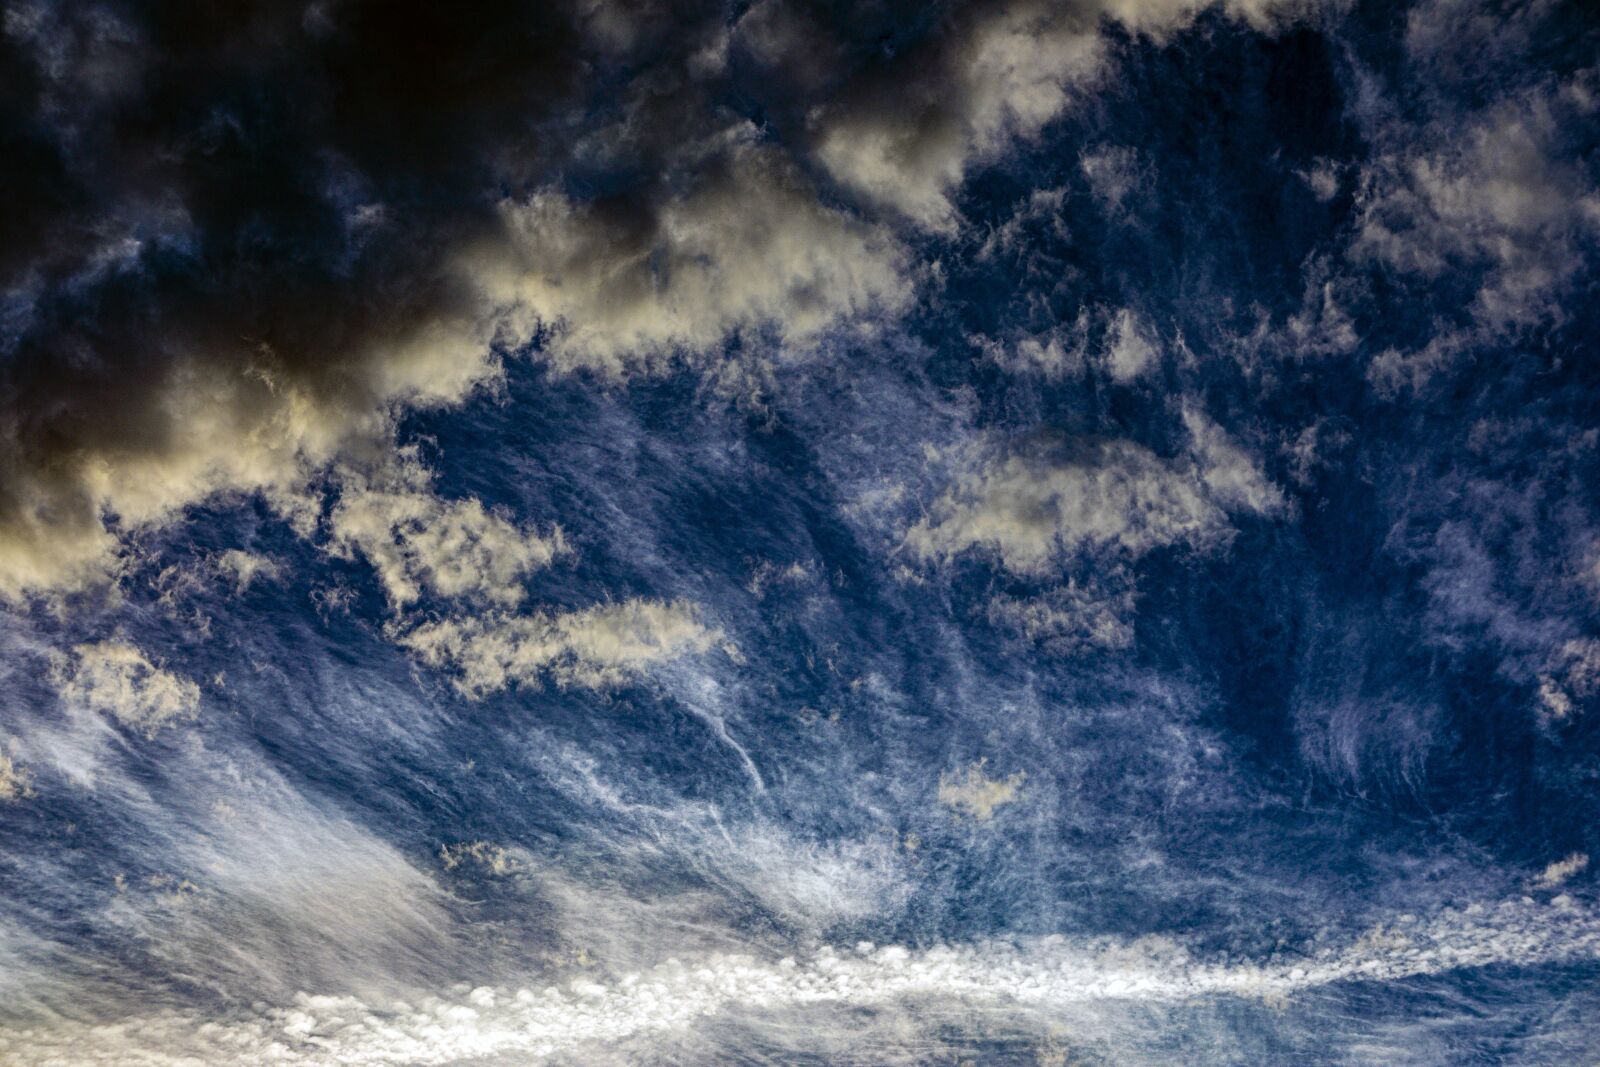 Canon EOS 5D Mark IV sample photo. Sky, clouds, sun photography